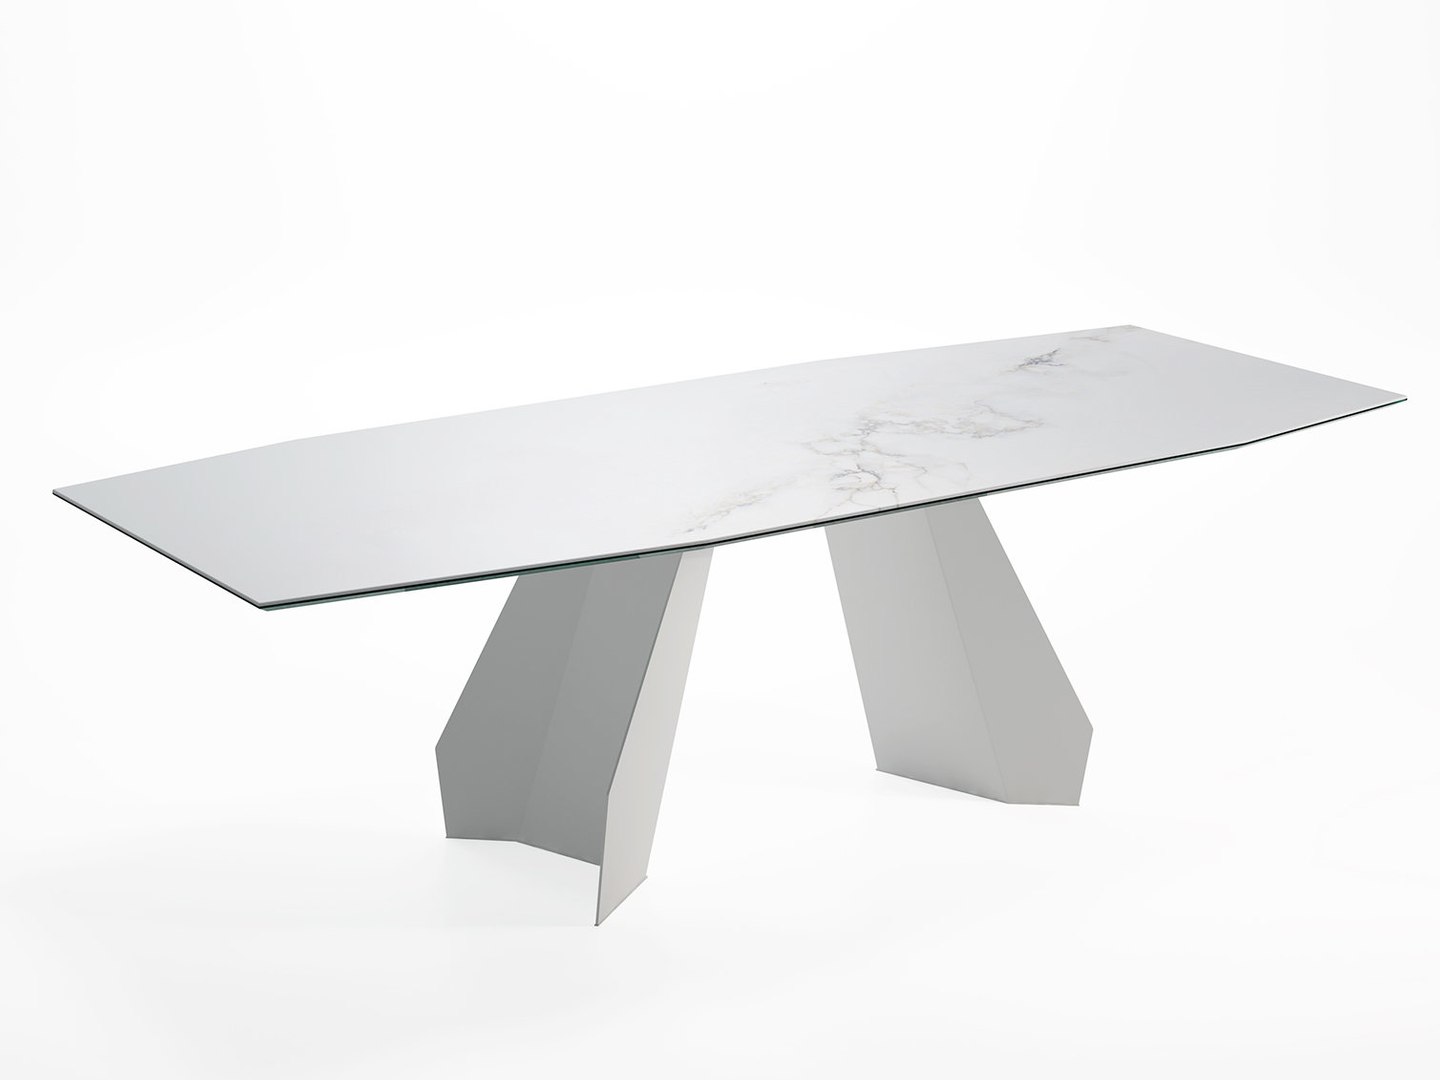 Origami 250 300 Dining Table 3D Model - TurboSquid 1308674